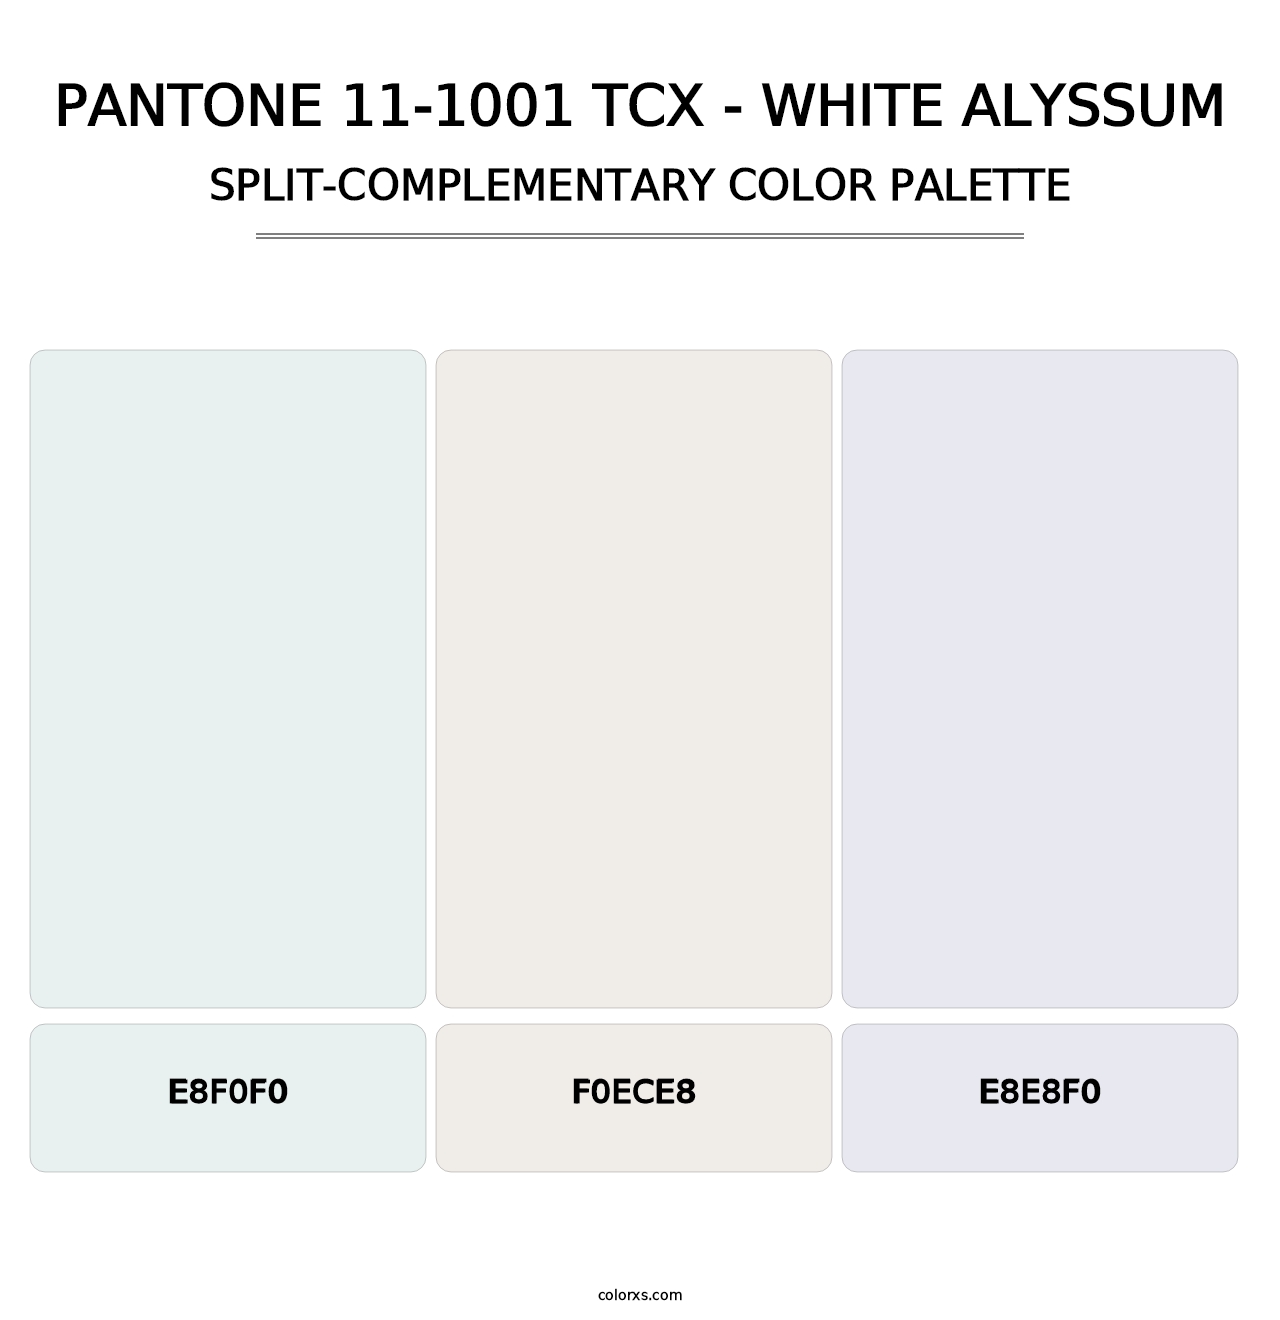 PANTONE 11-1001 TCX - White Alyssum - Split-Complementary Color Palette